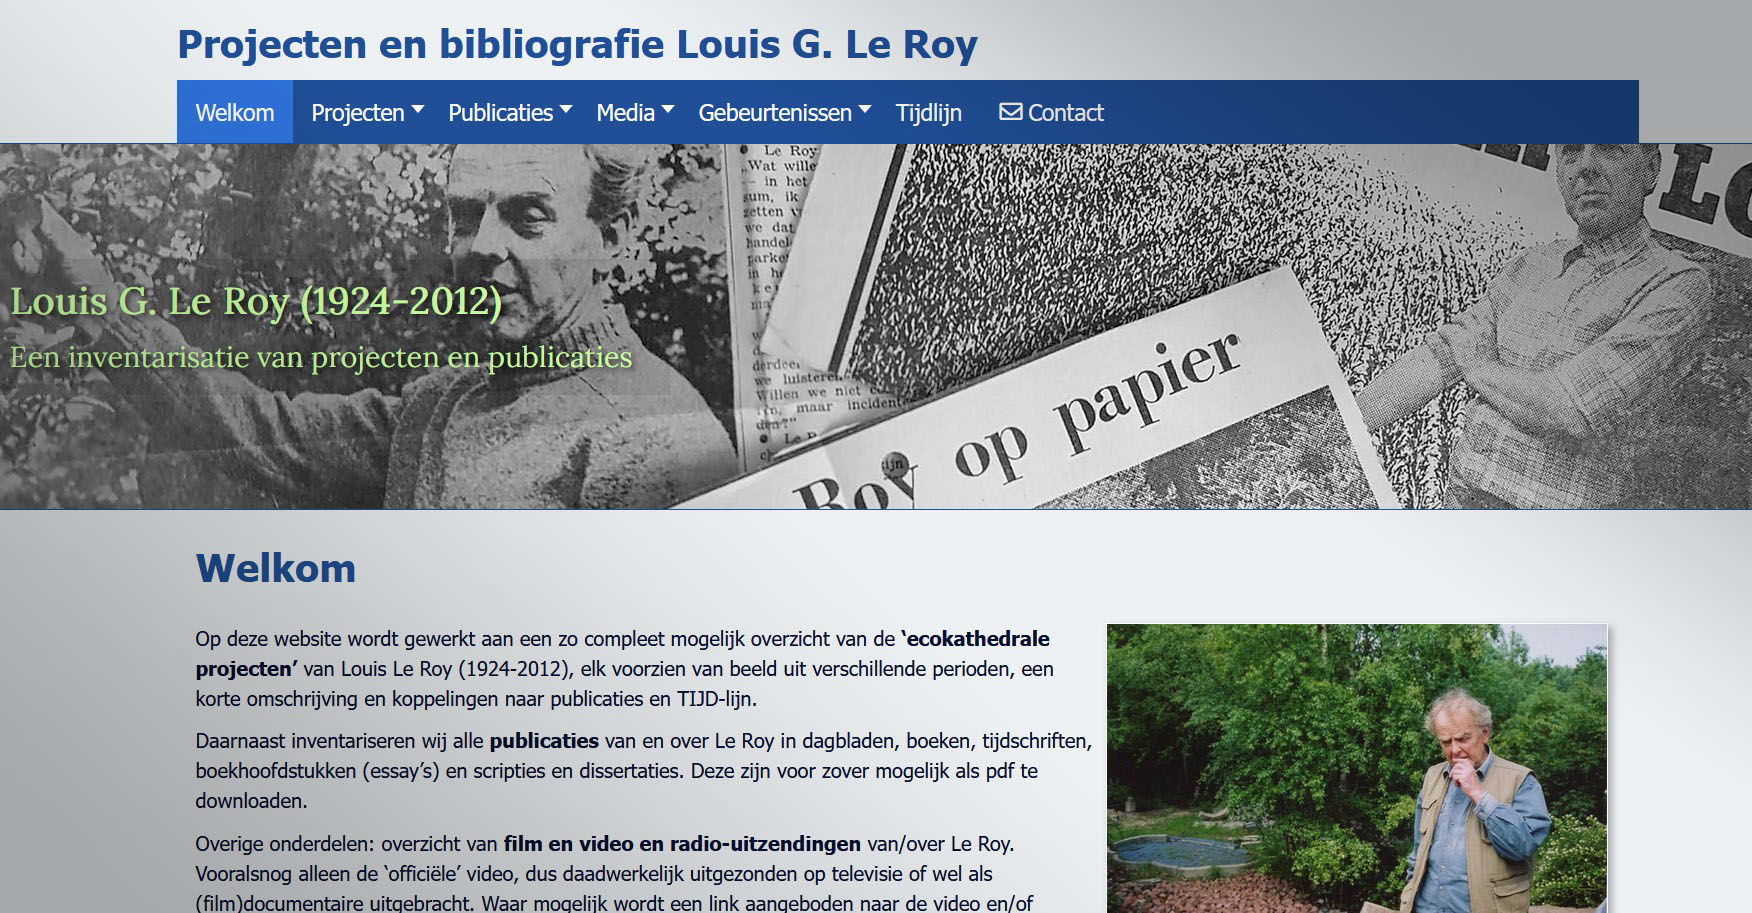 Publicaties en projecten van Louis Le Roy  zijn ecokathedraal